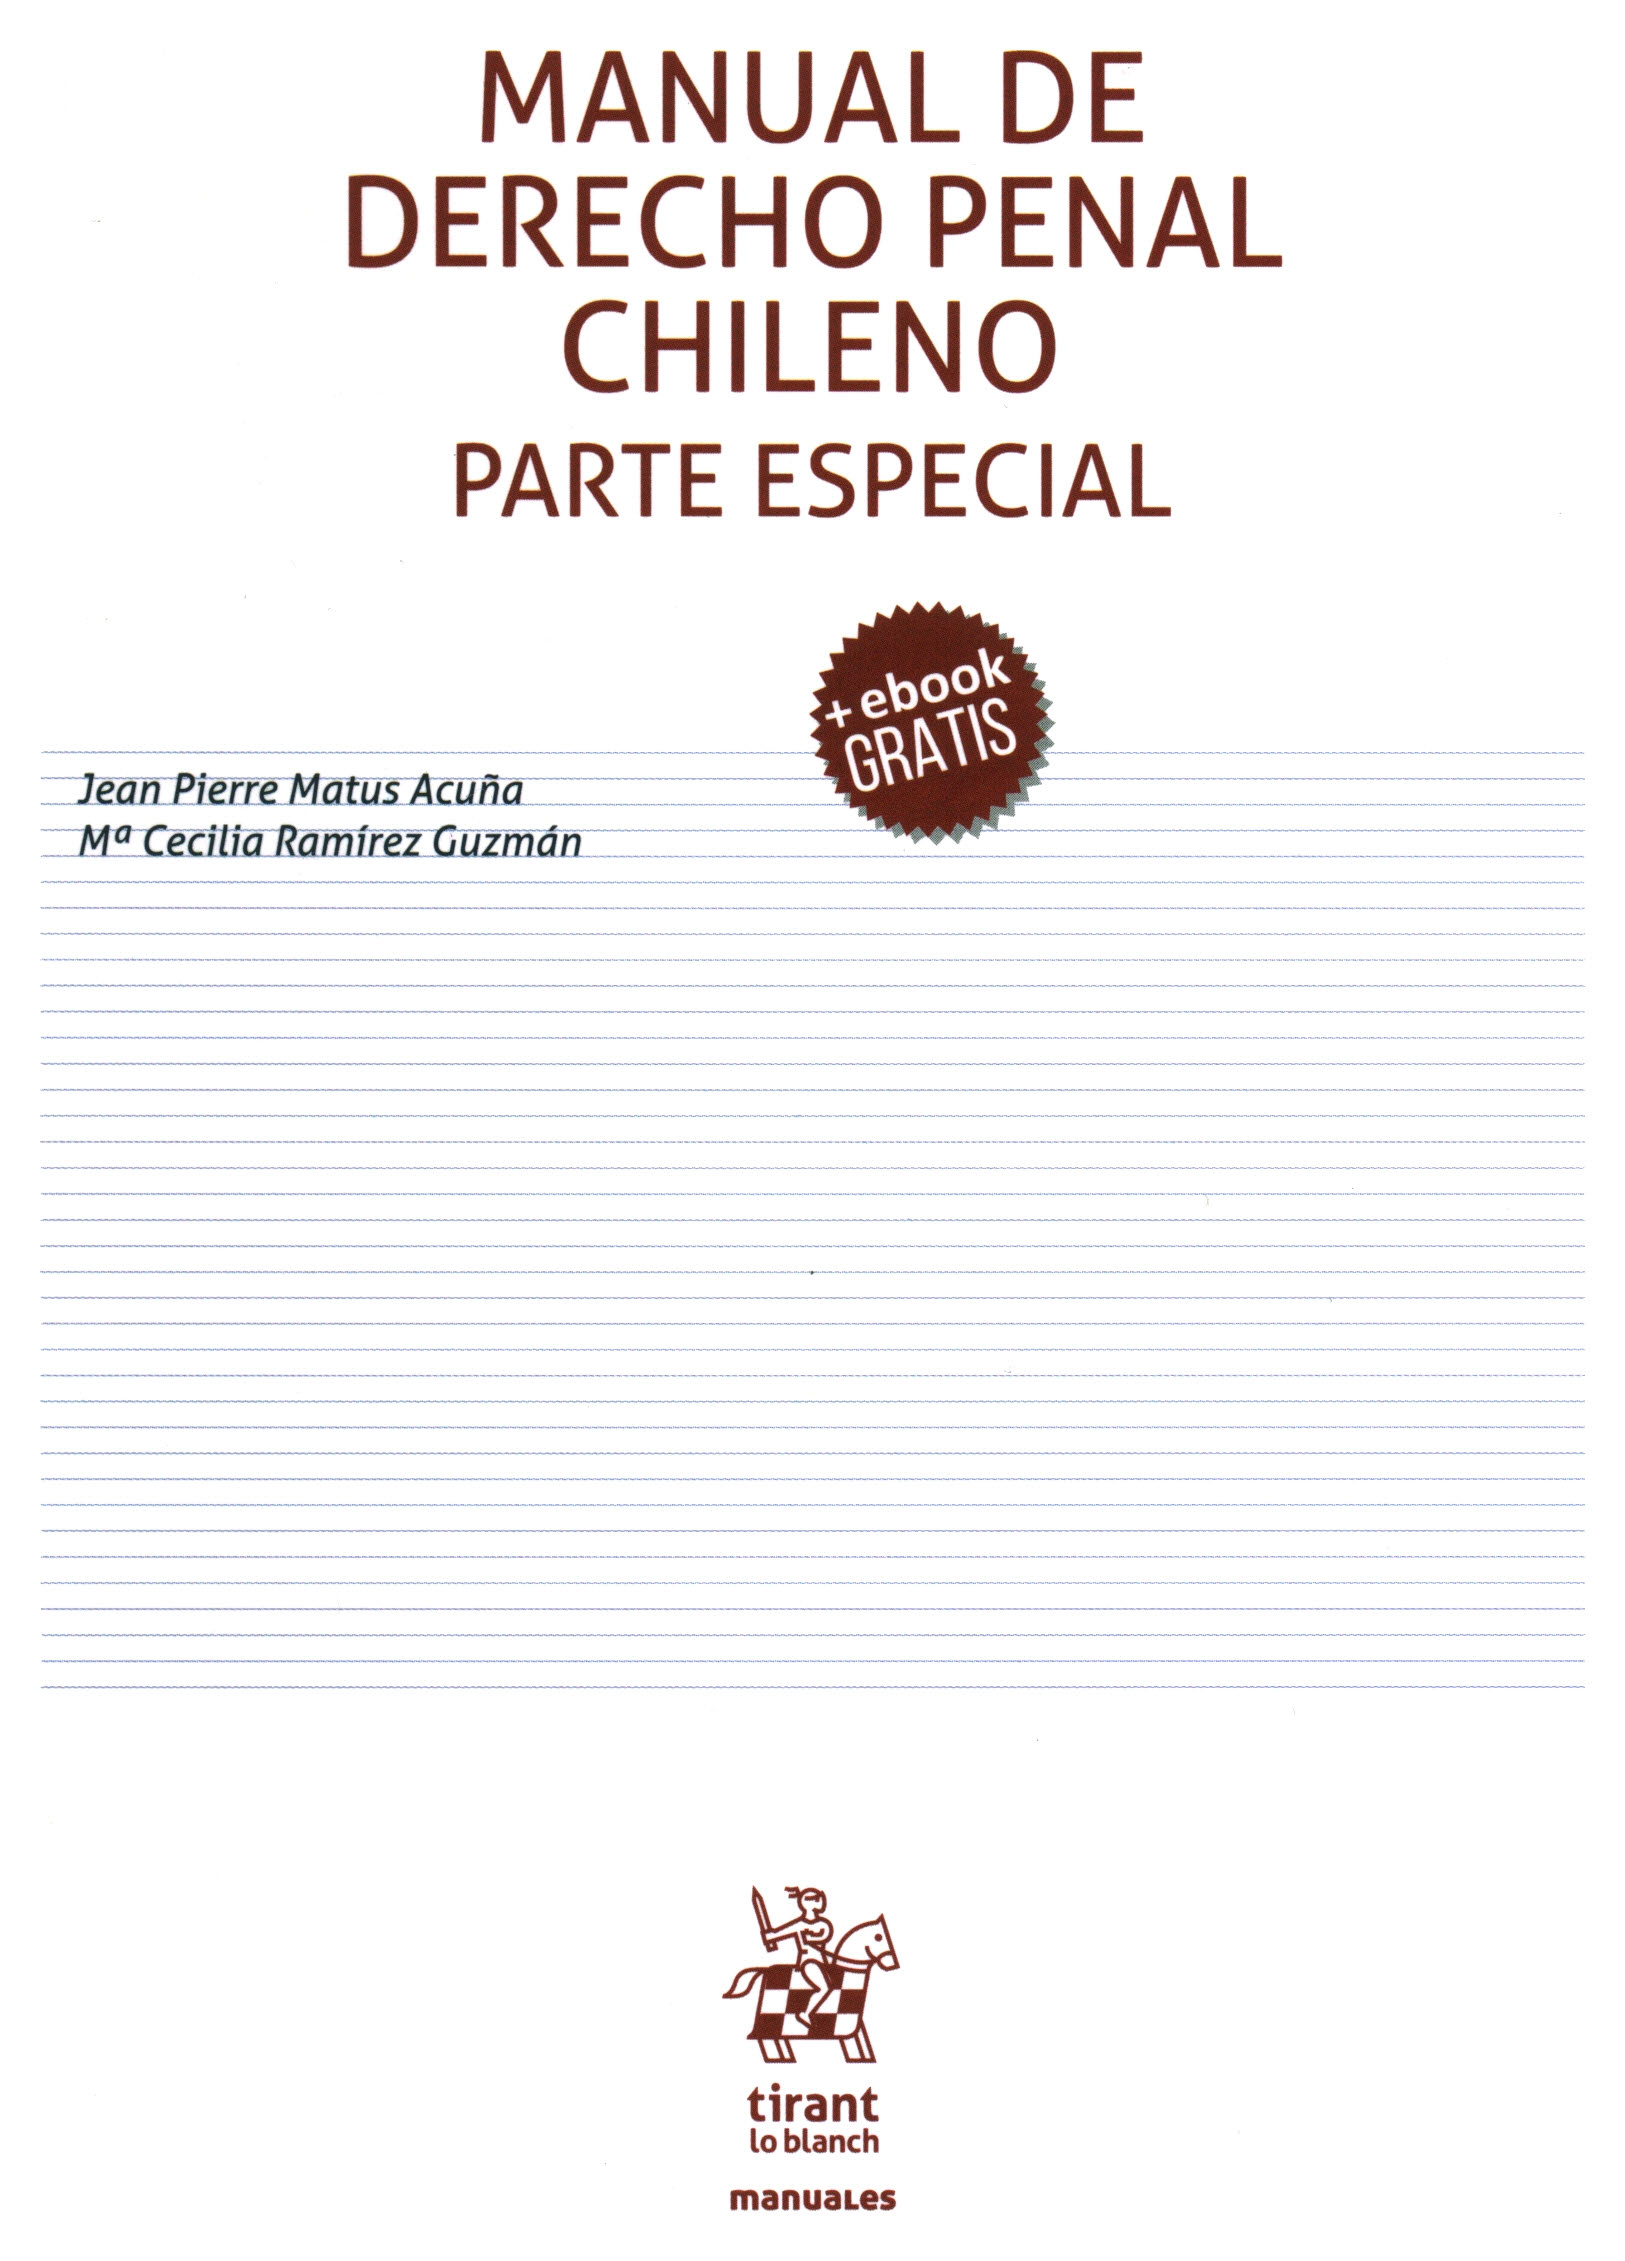 Manual de derecho penal chileno parte especial